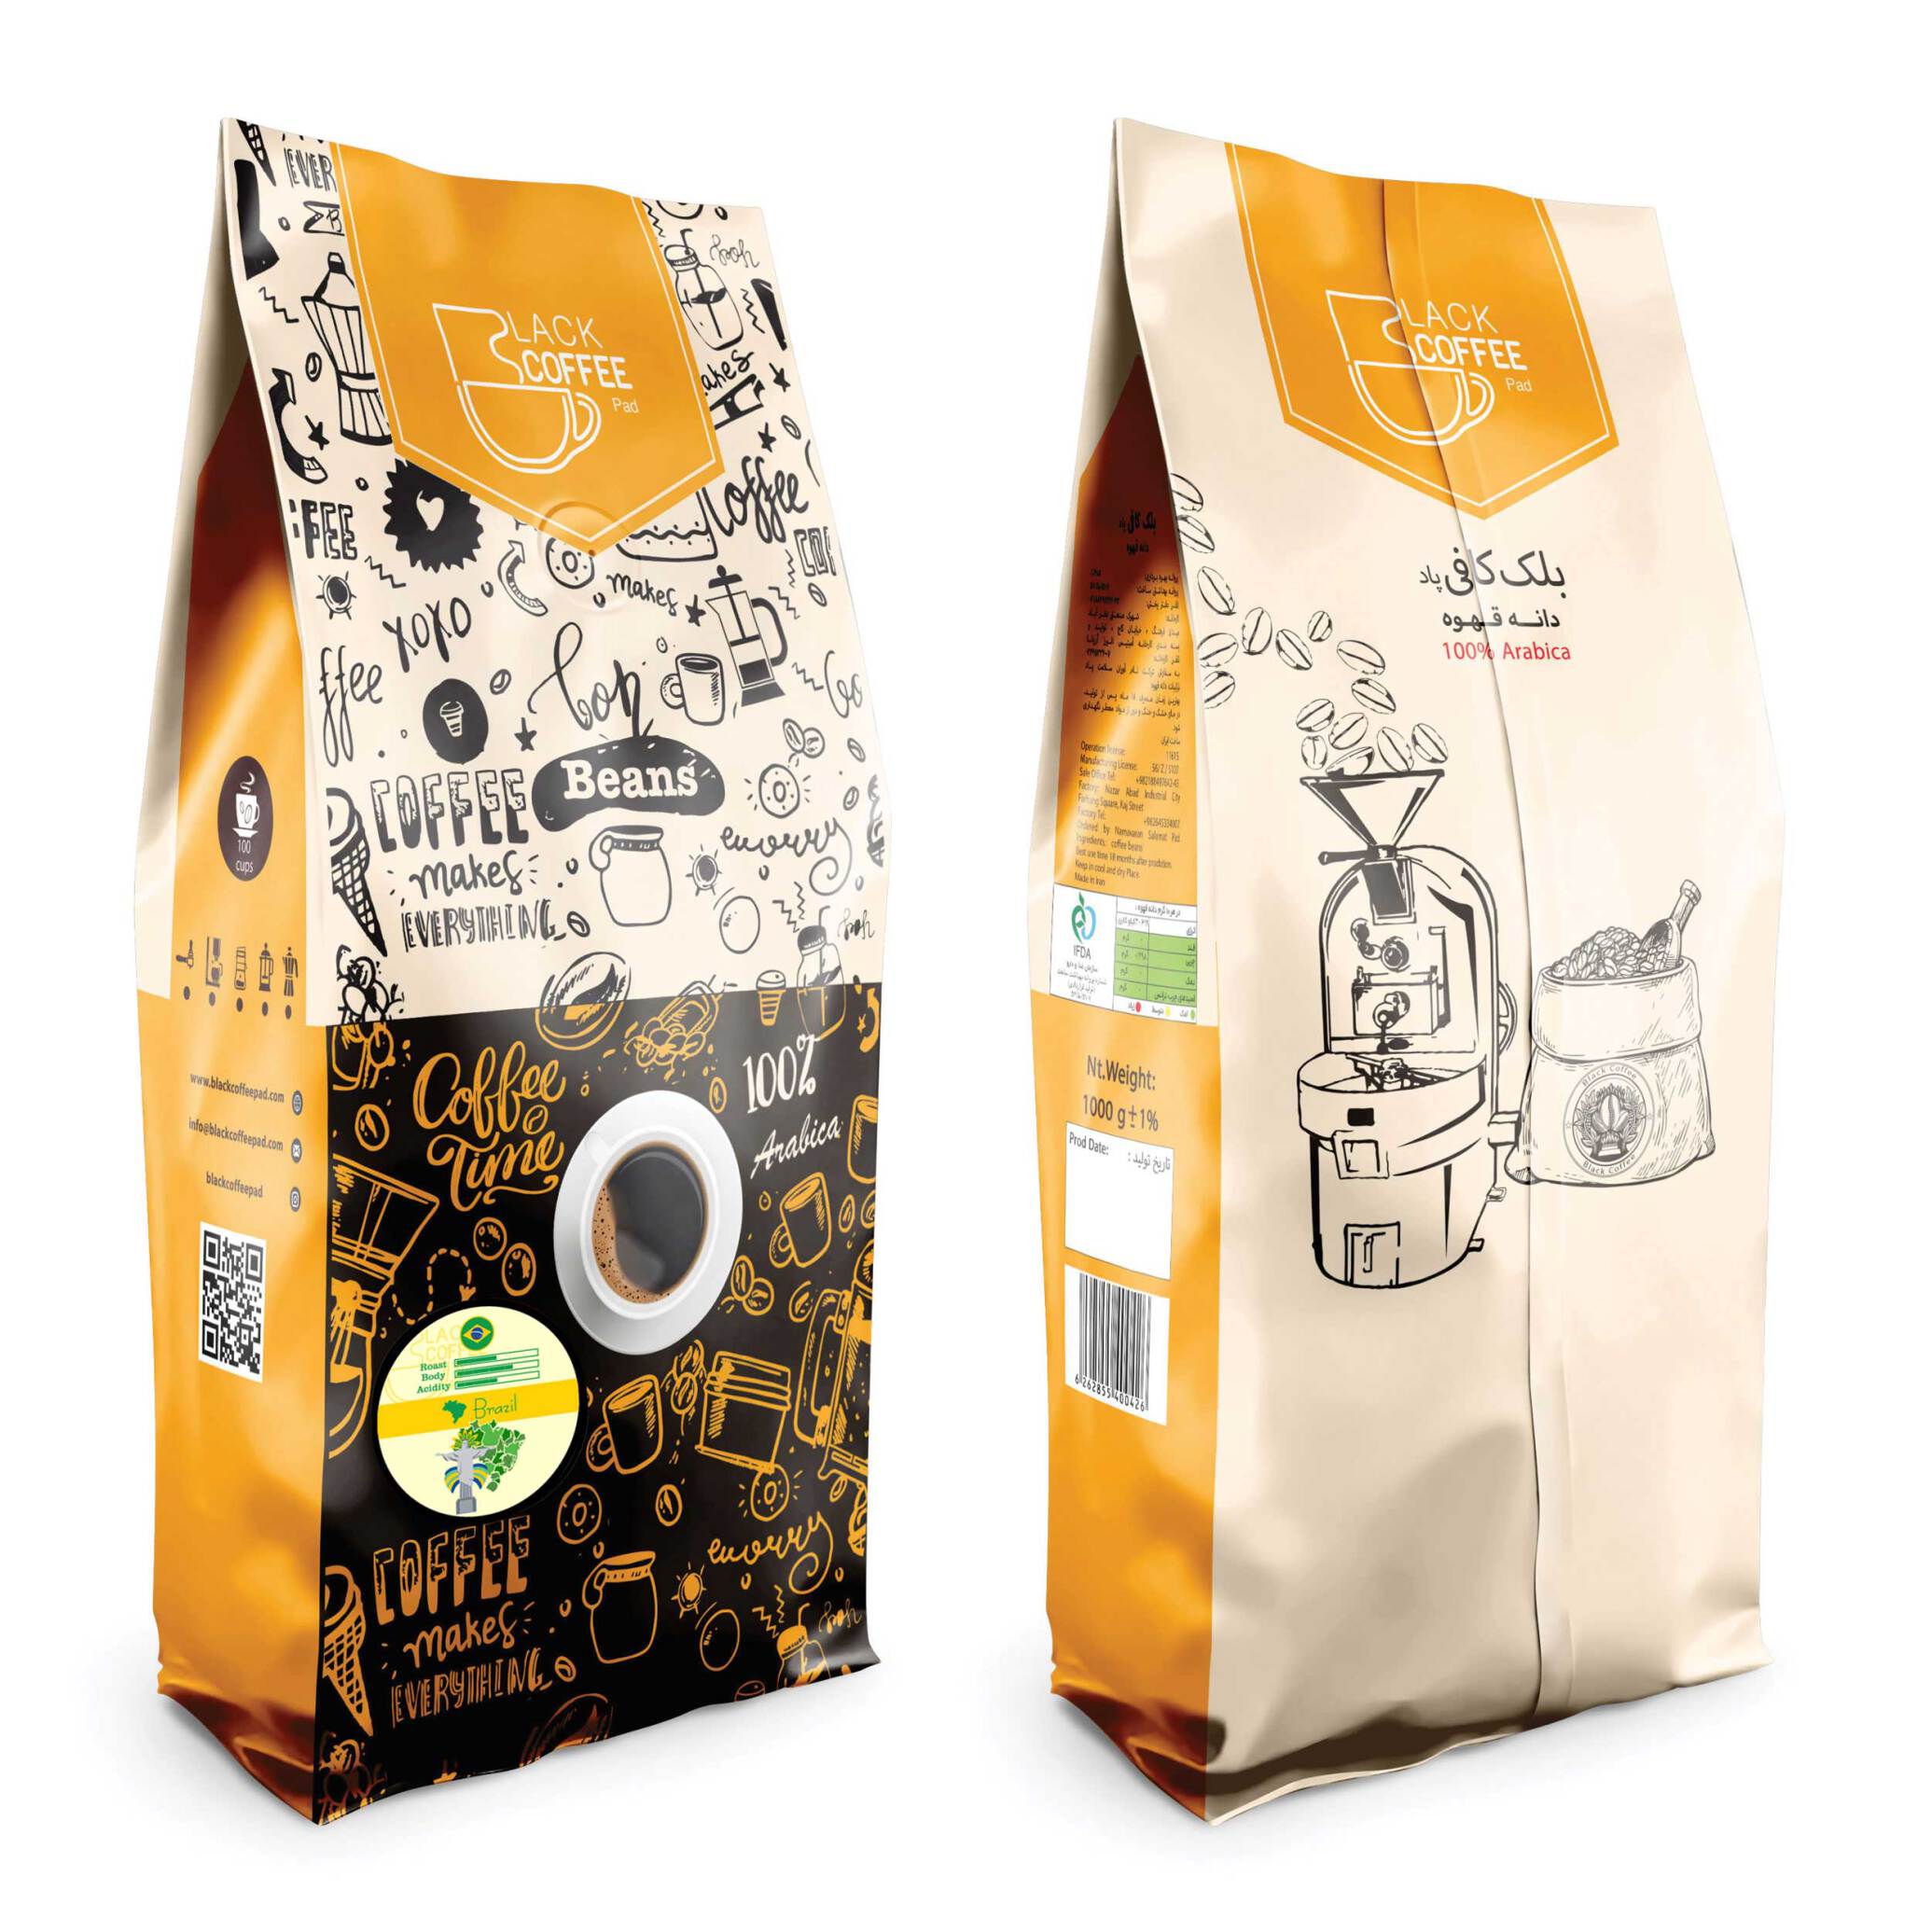  دانه قهوه برزیل - Brasil coffee beans - یک کیلویی | دانه قهوه | خرید دانه | بلک کافی 